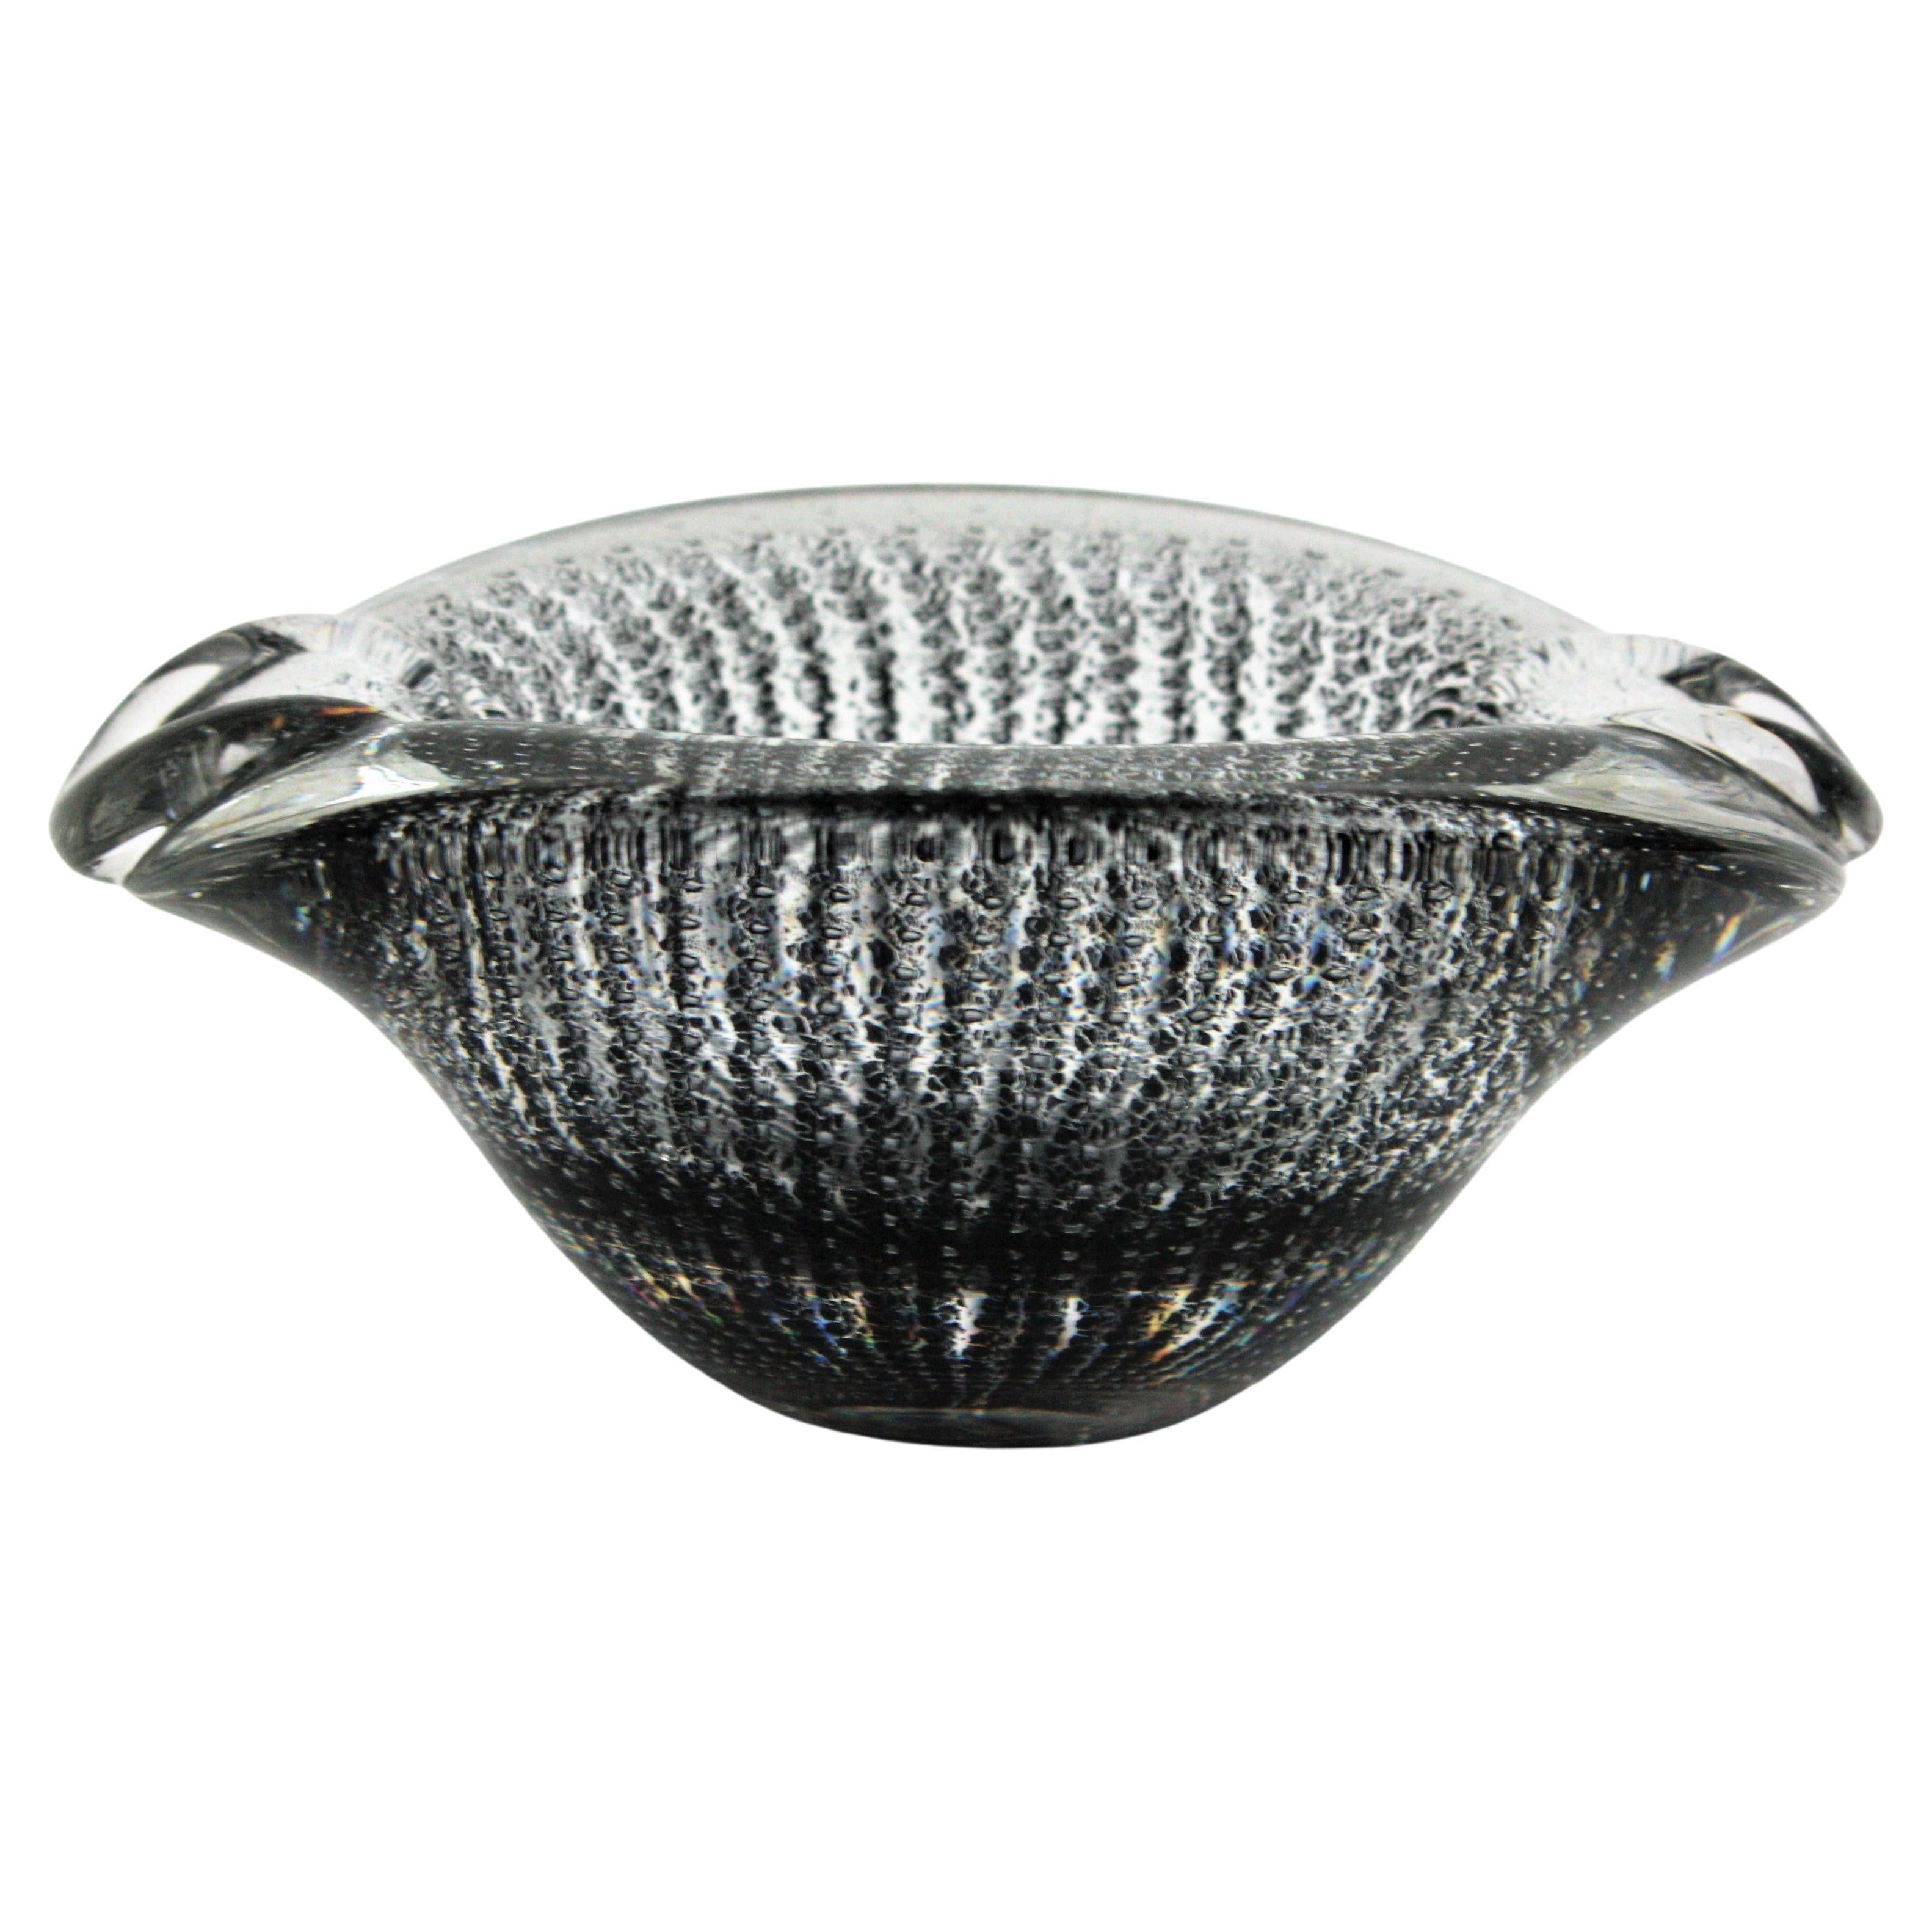 Archimede Seguso Murano Bullicante Black and Clear Art Glass Bowl / Ashtray